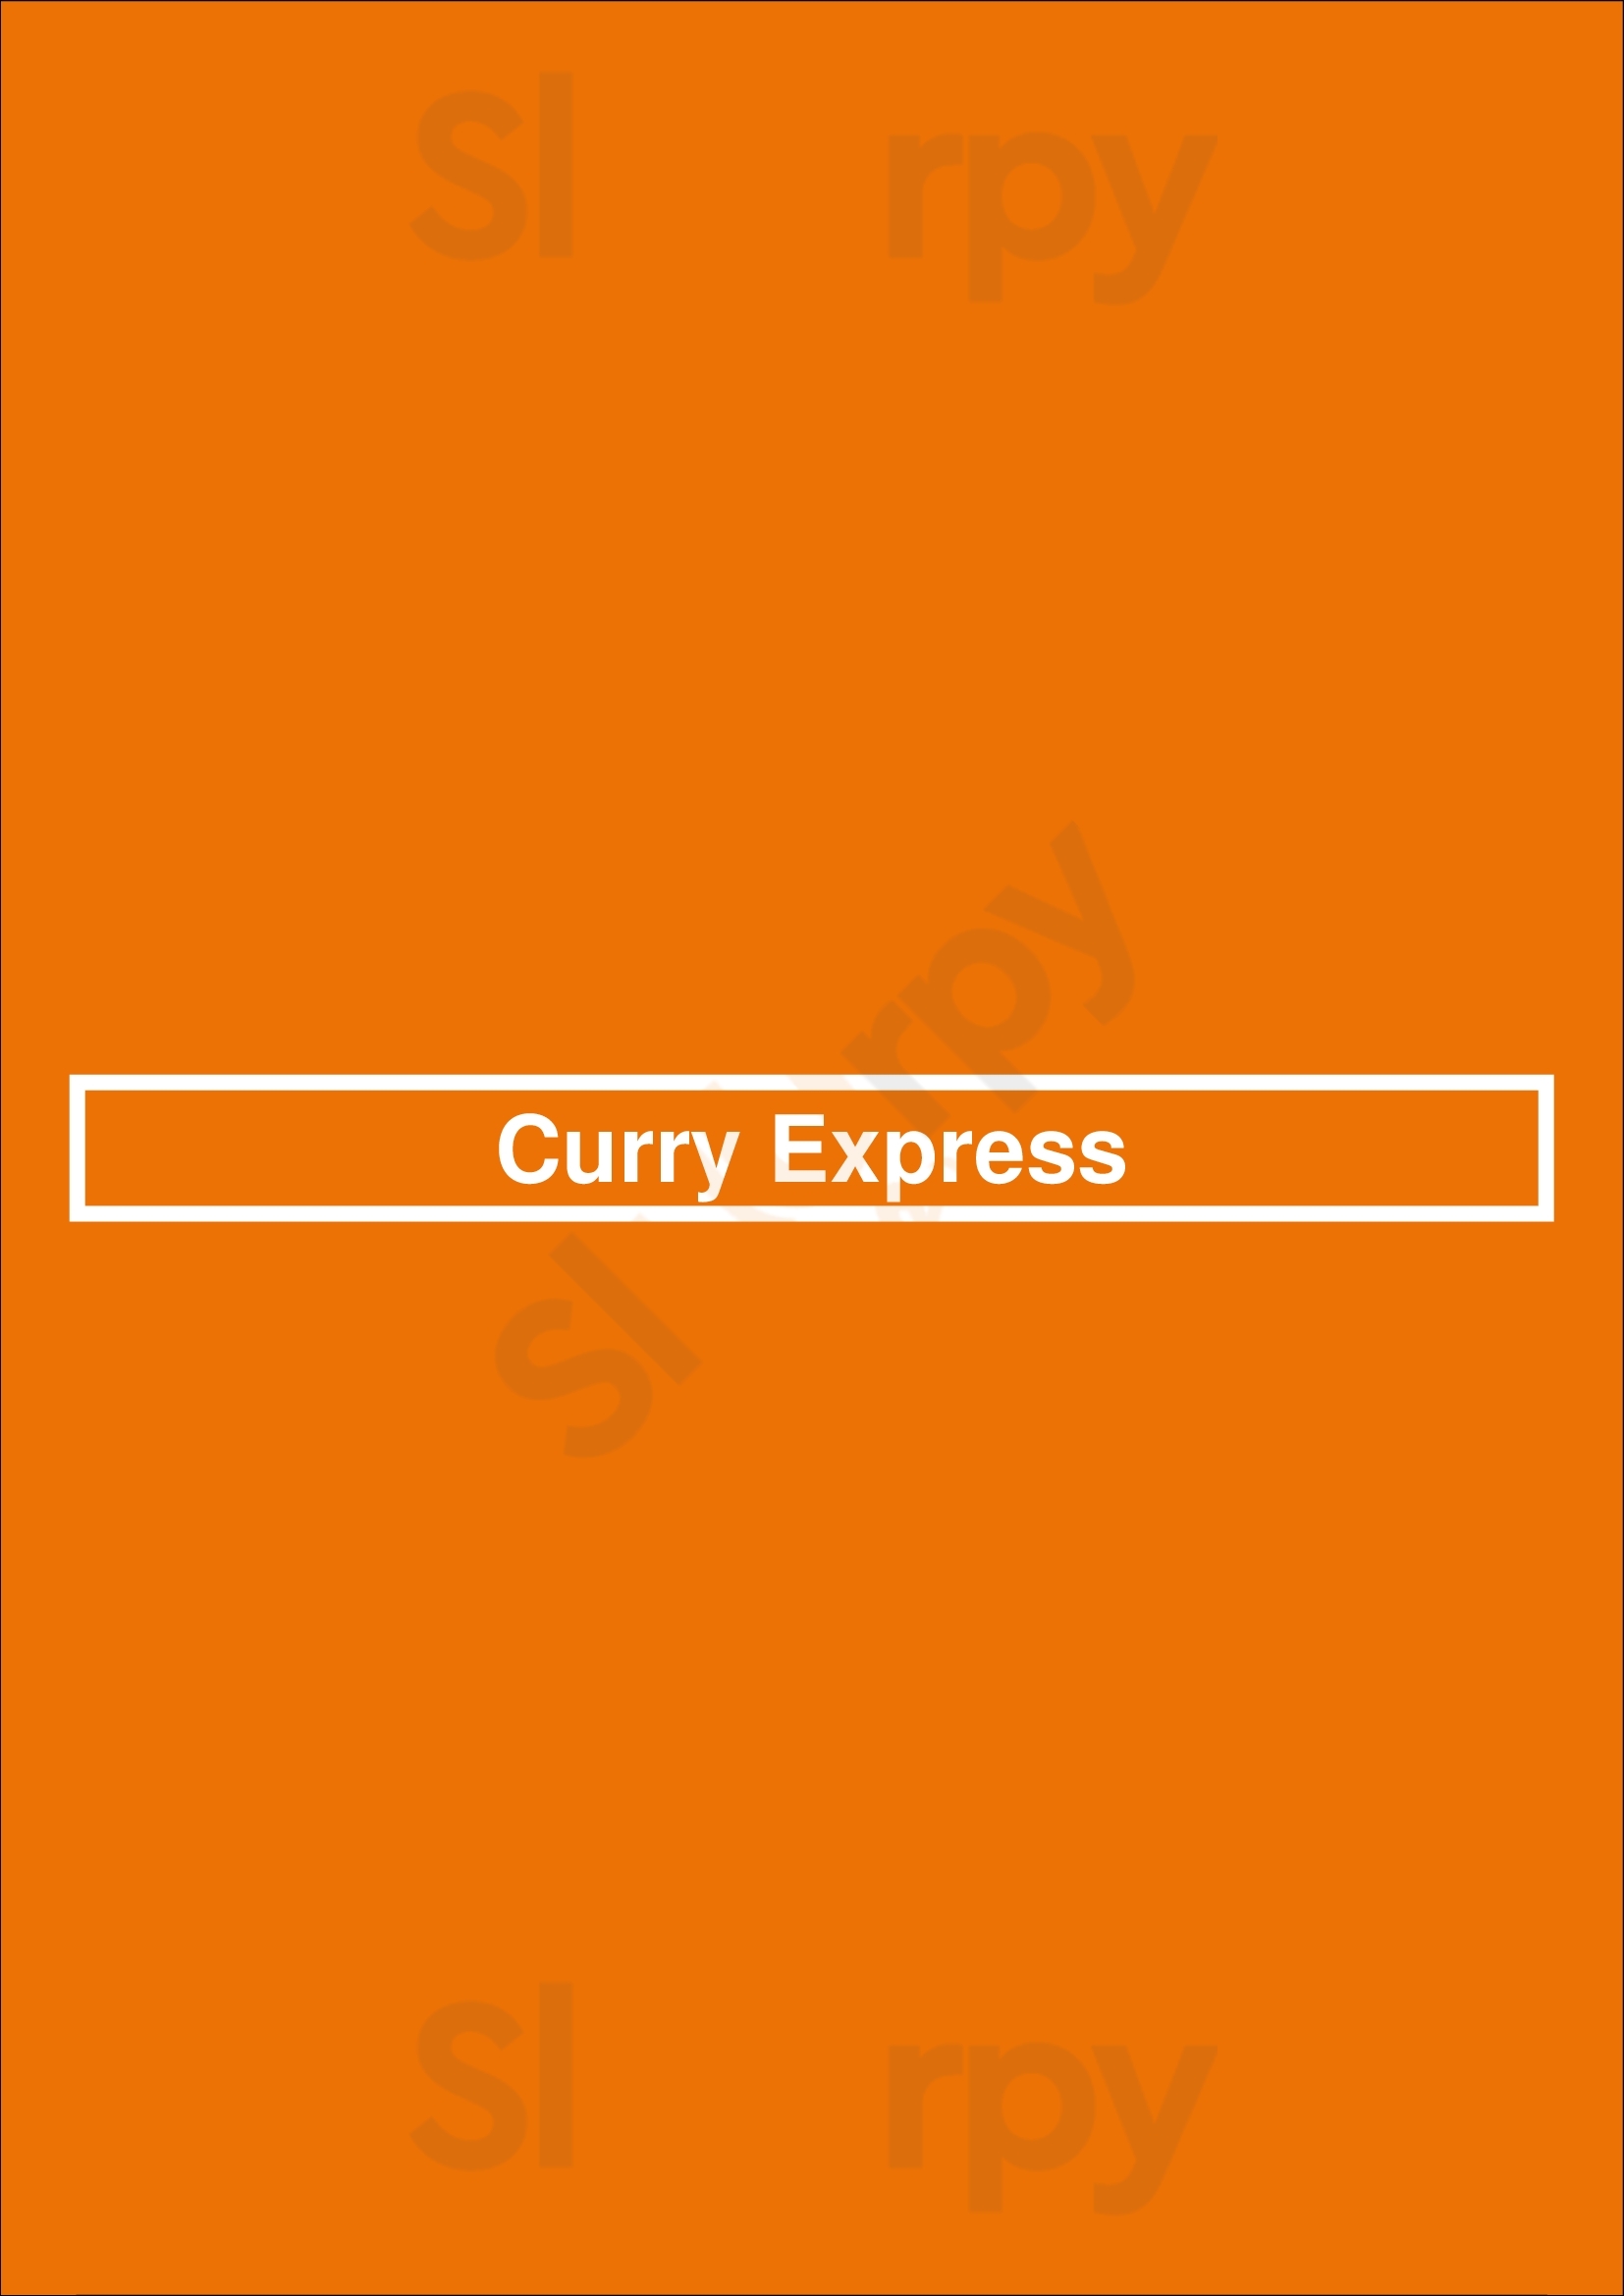 Curry Express Richmond Menu - 1